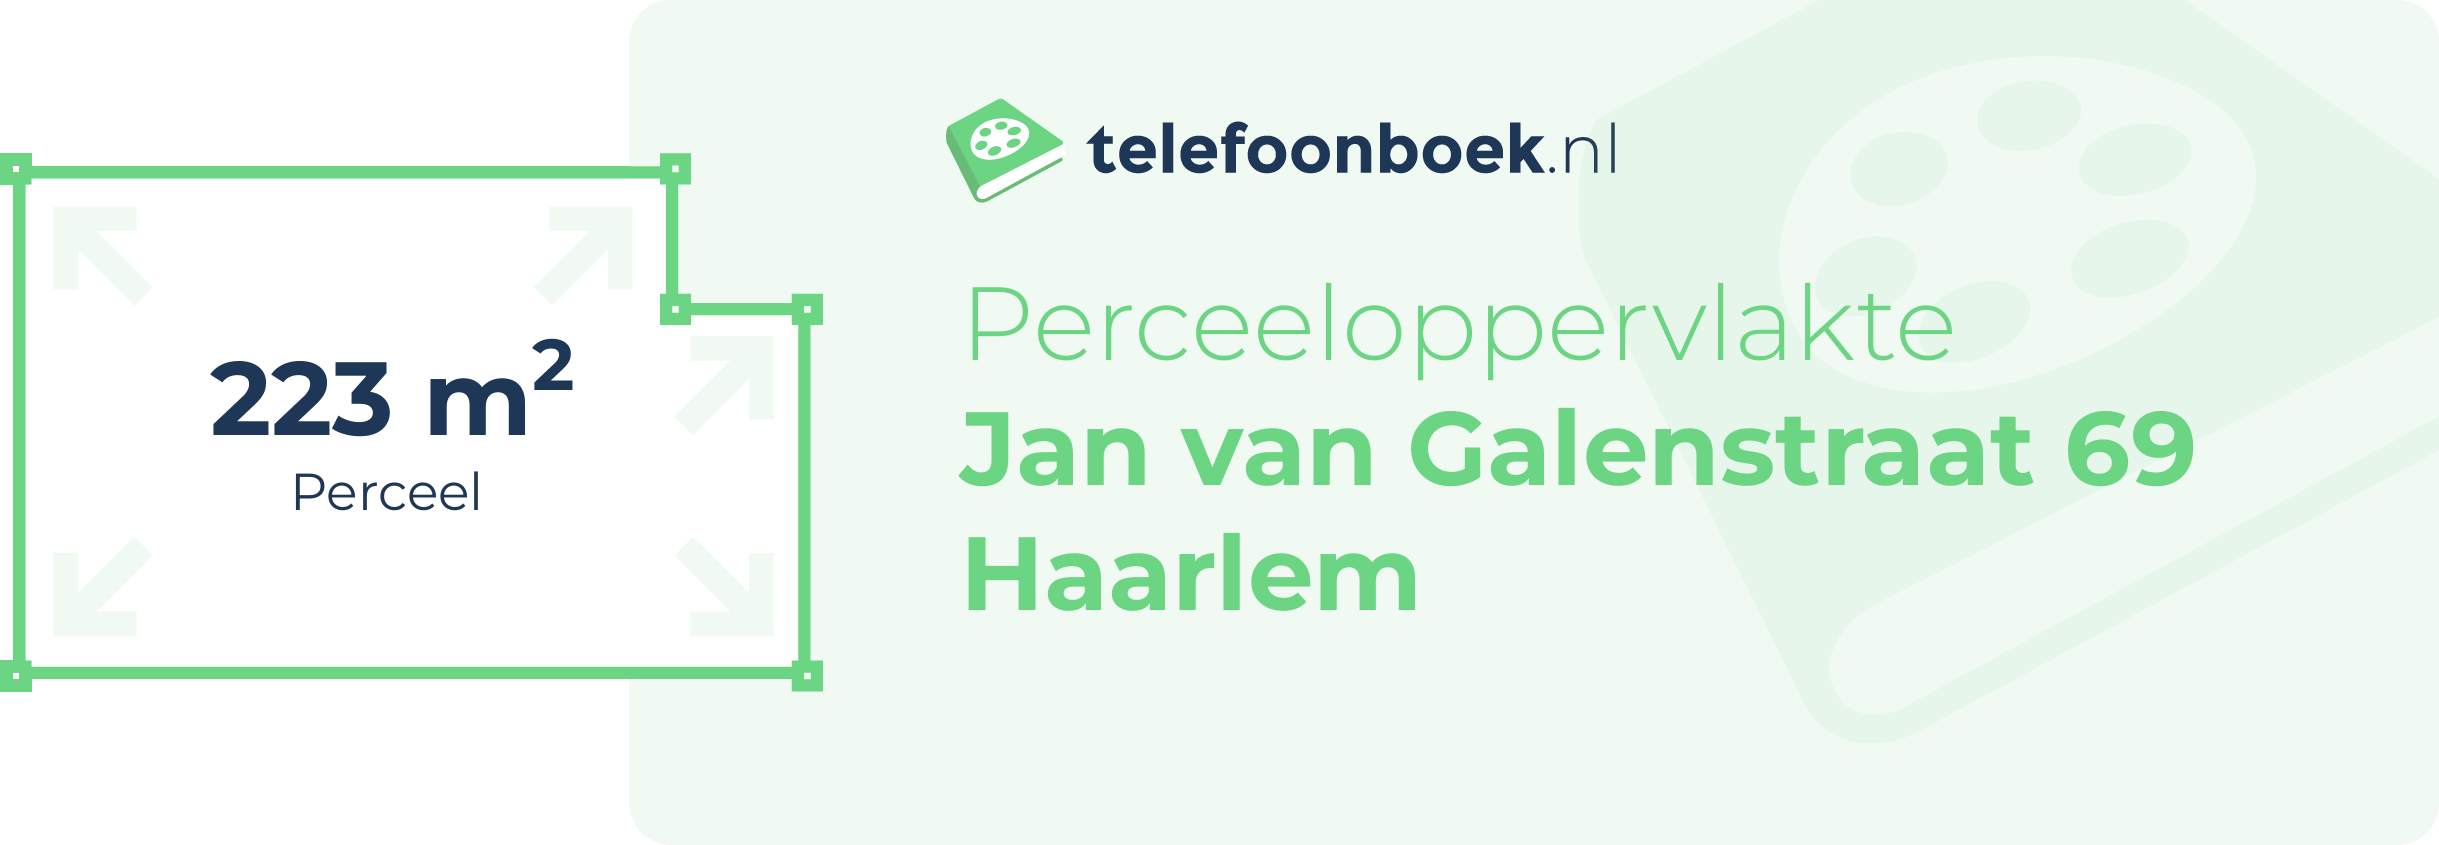 Perceeloppervlakte Jan Van Galenstraat 69 Haarlem